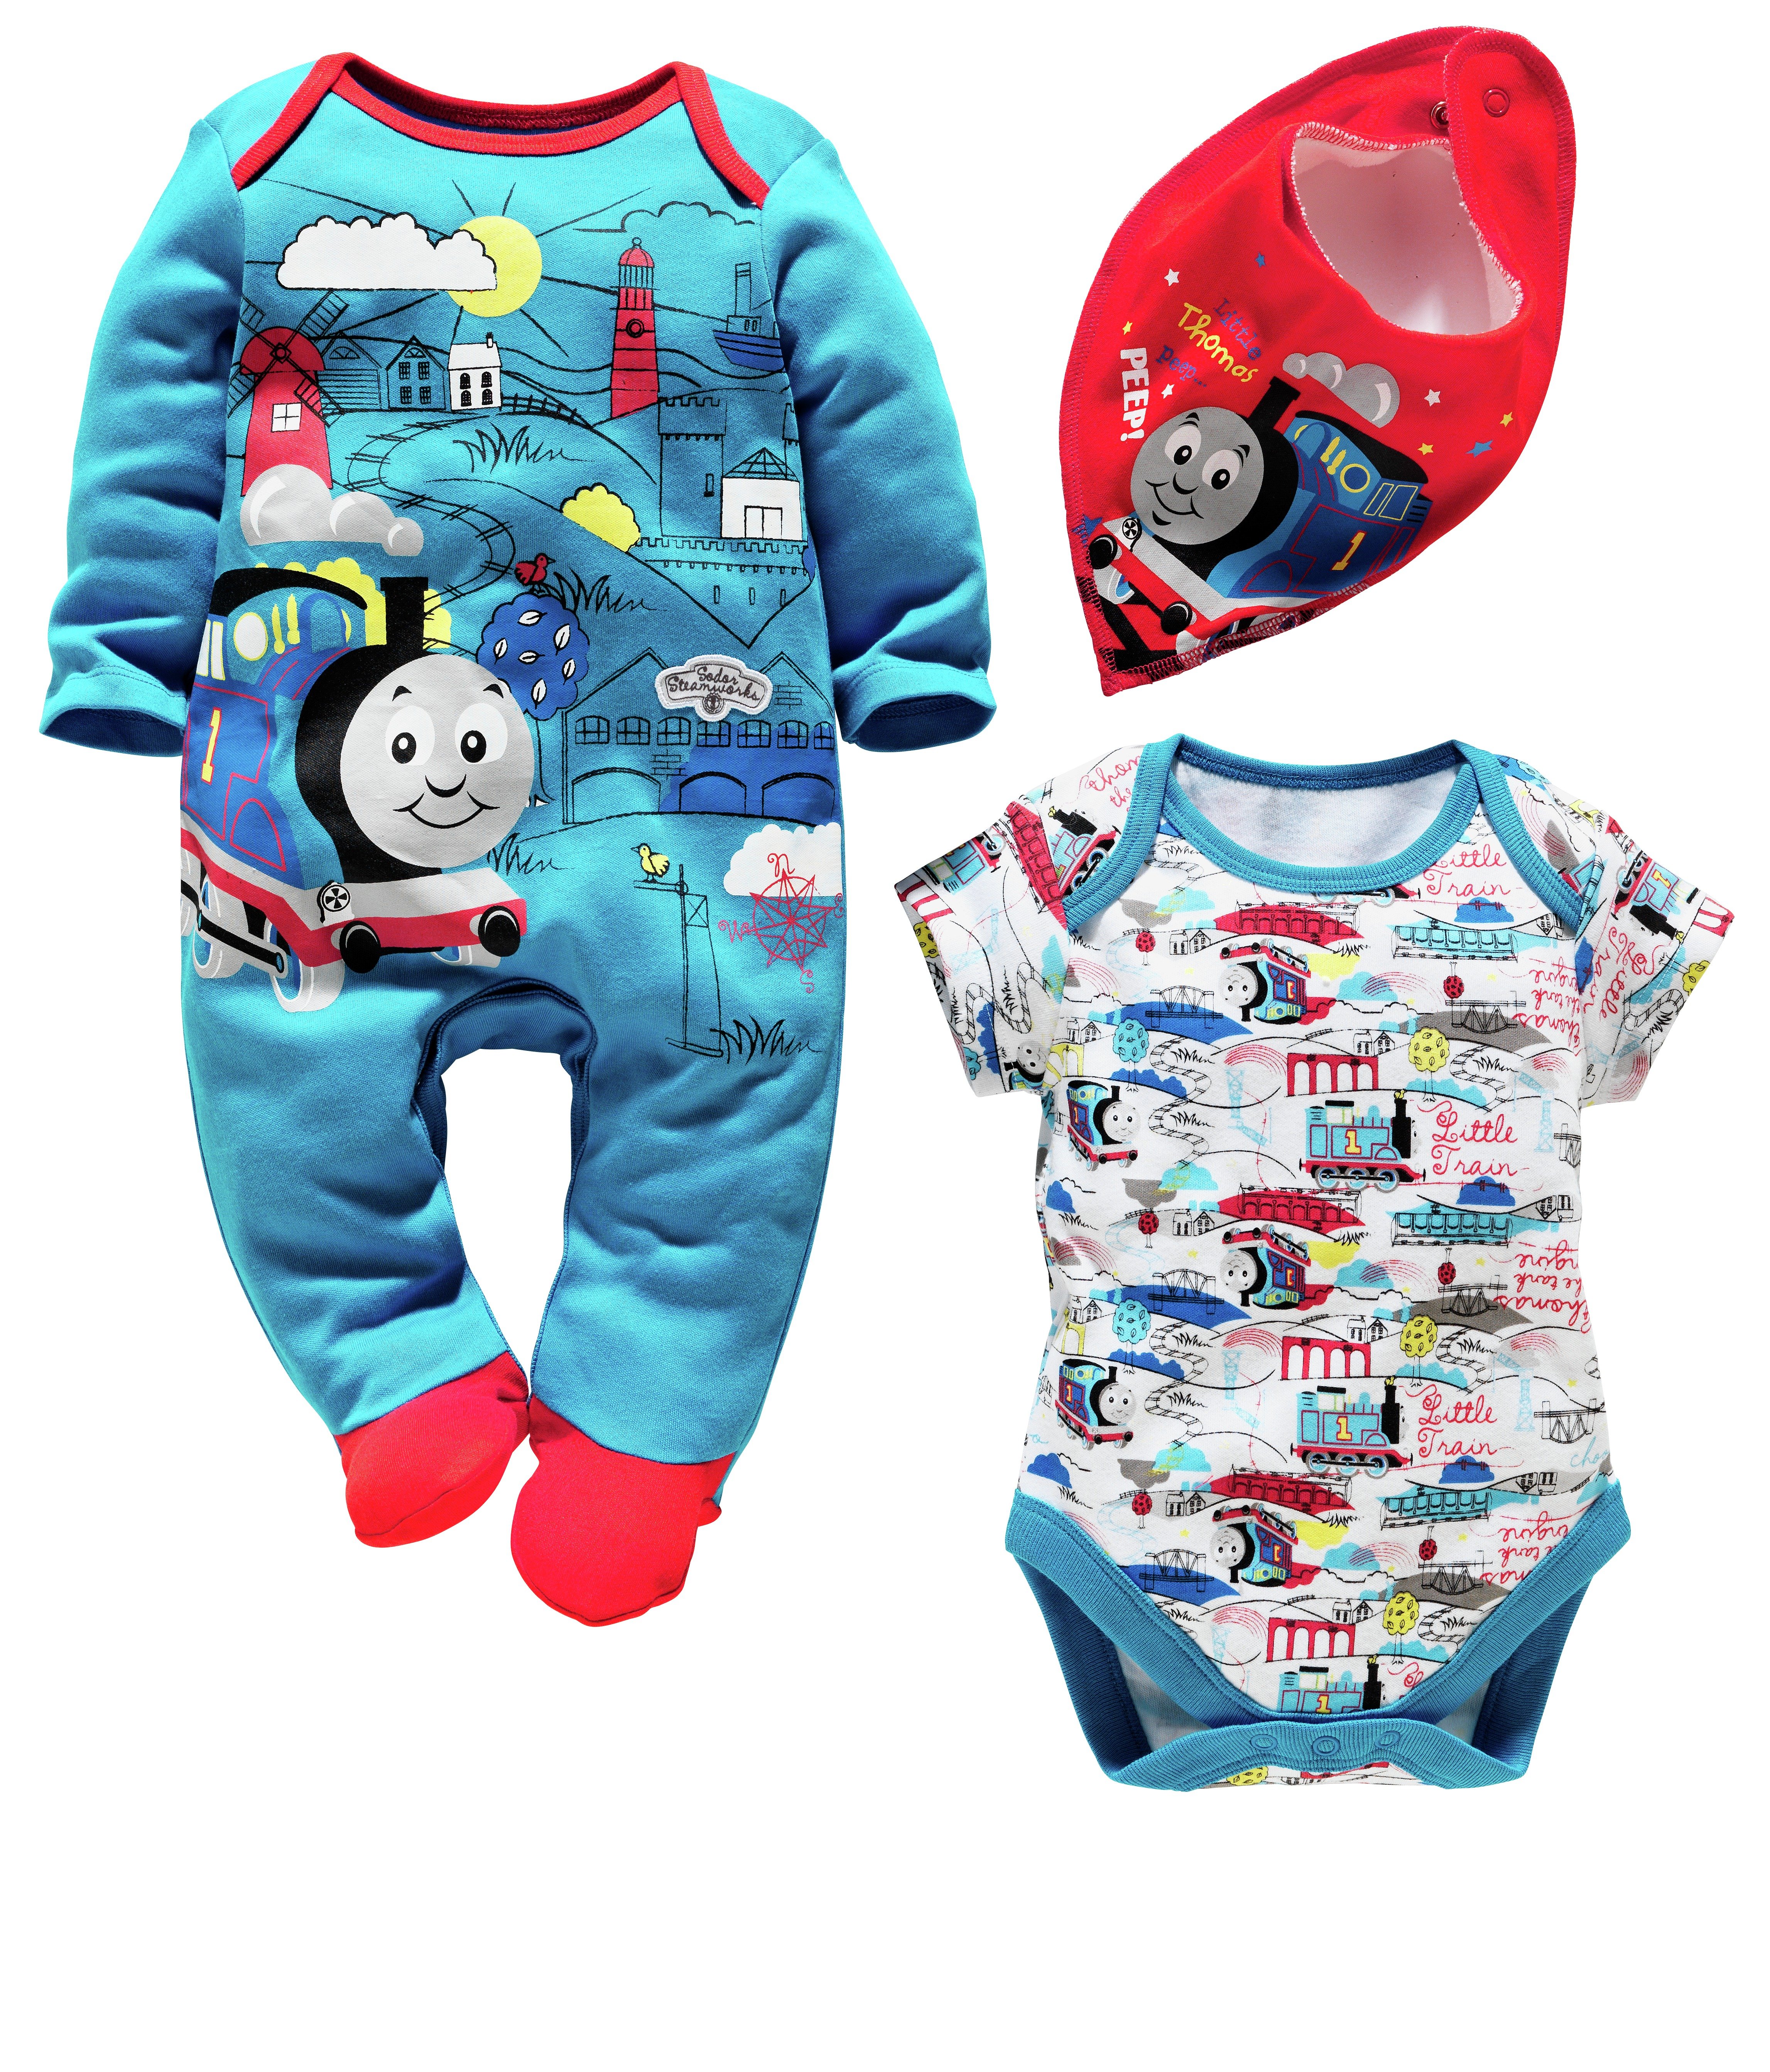 Baby Thomas Gift Set - Newborn